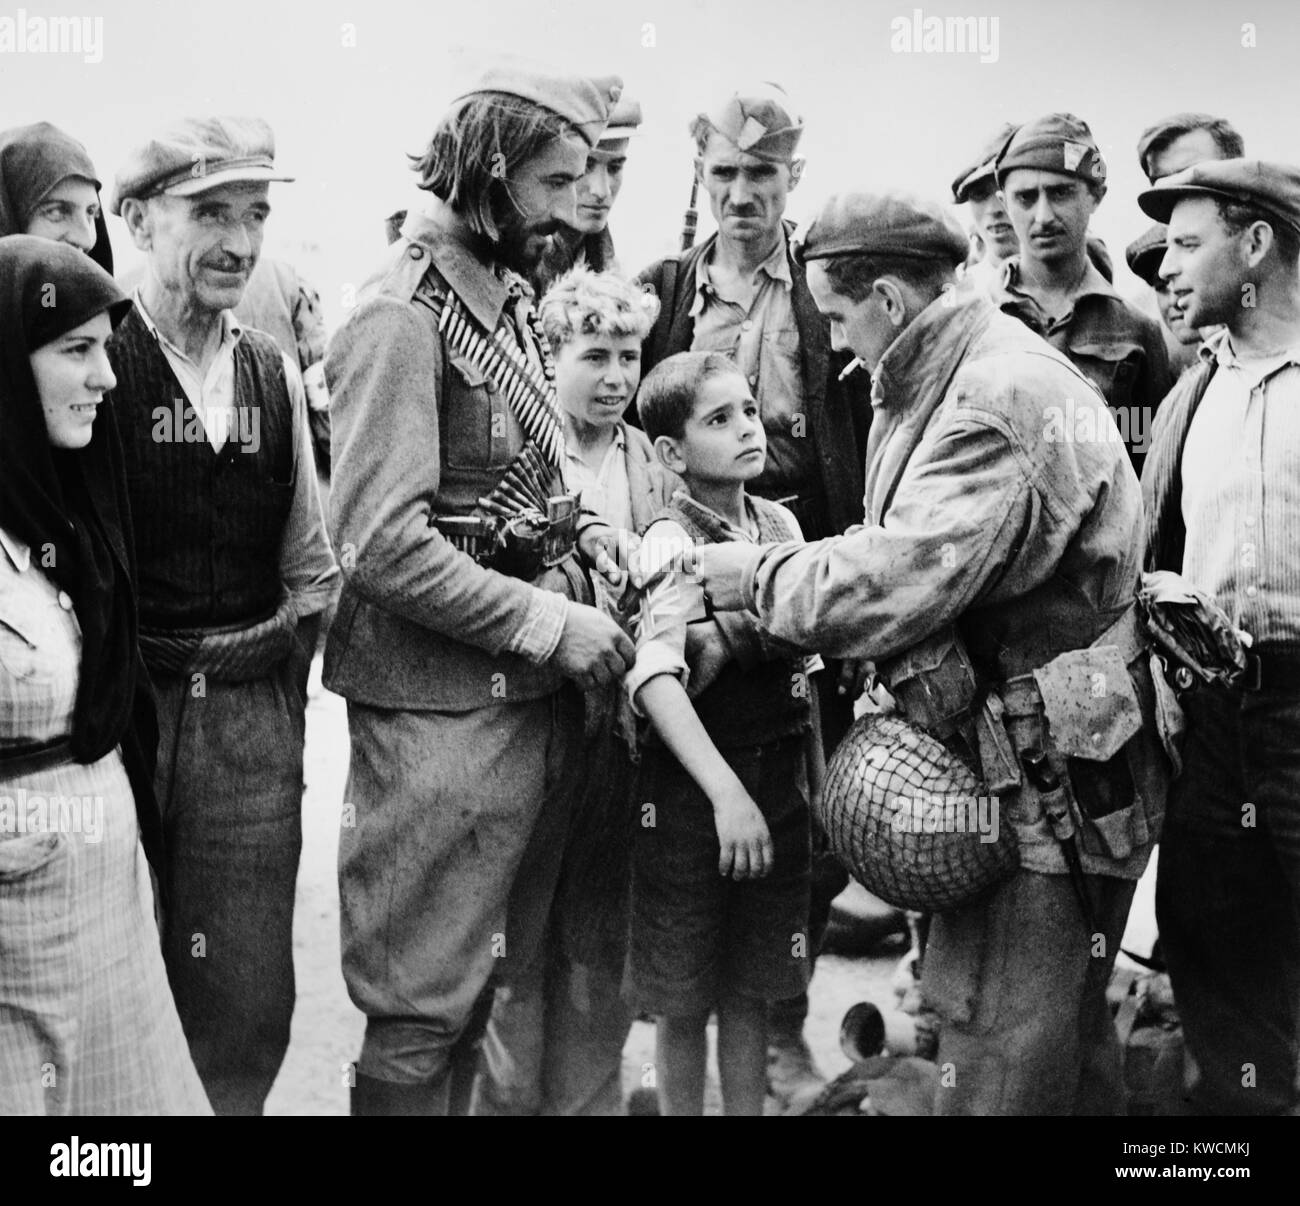 Britischen Befreier des Griechenland, Fixieren eine britische Band am Arm eines kleinen Jungen. Okt. 24, 1944. Die britische Fallschirmspringer aus amerikanischen C-47 über Megara Flugplatz in der Nähe von Athens sprang. - (BSLOC 2014 15 216) Stockfoto